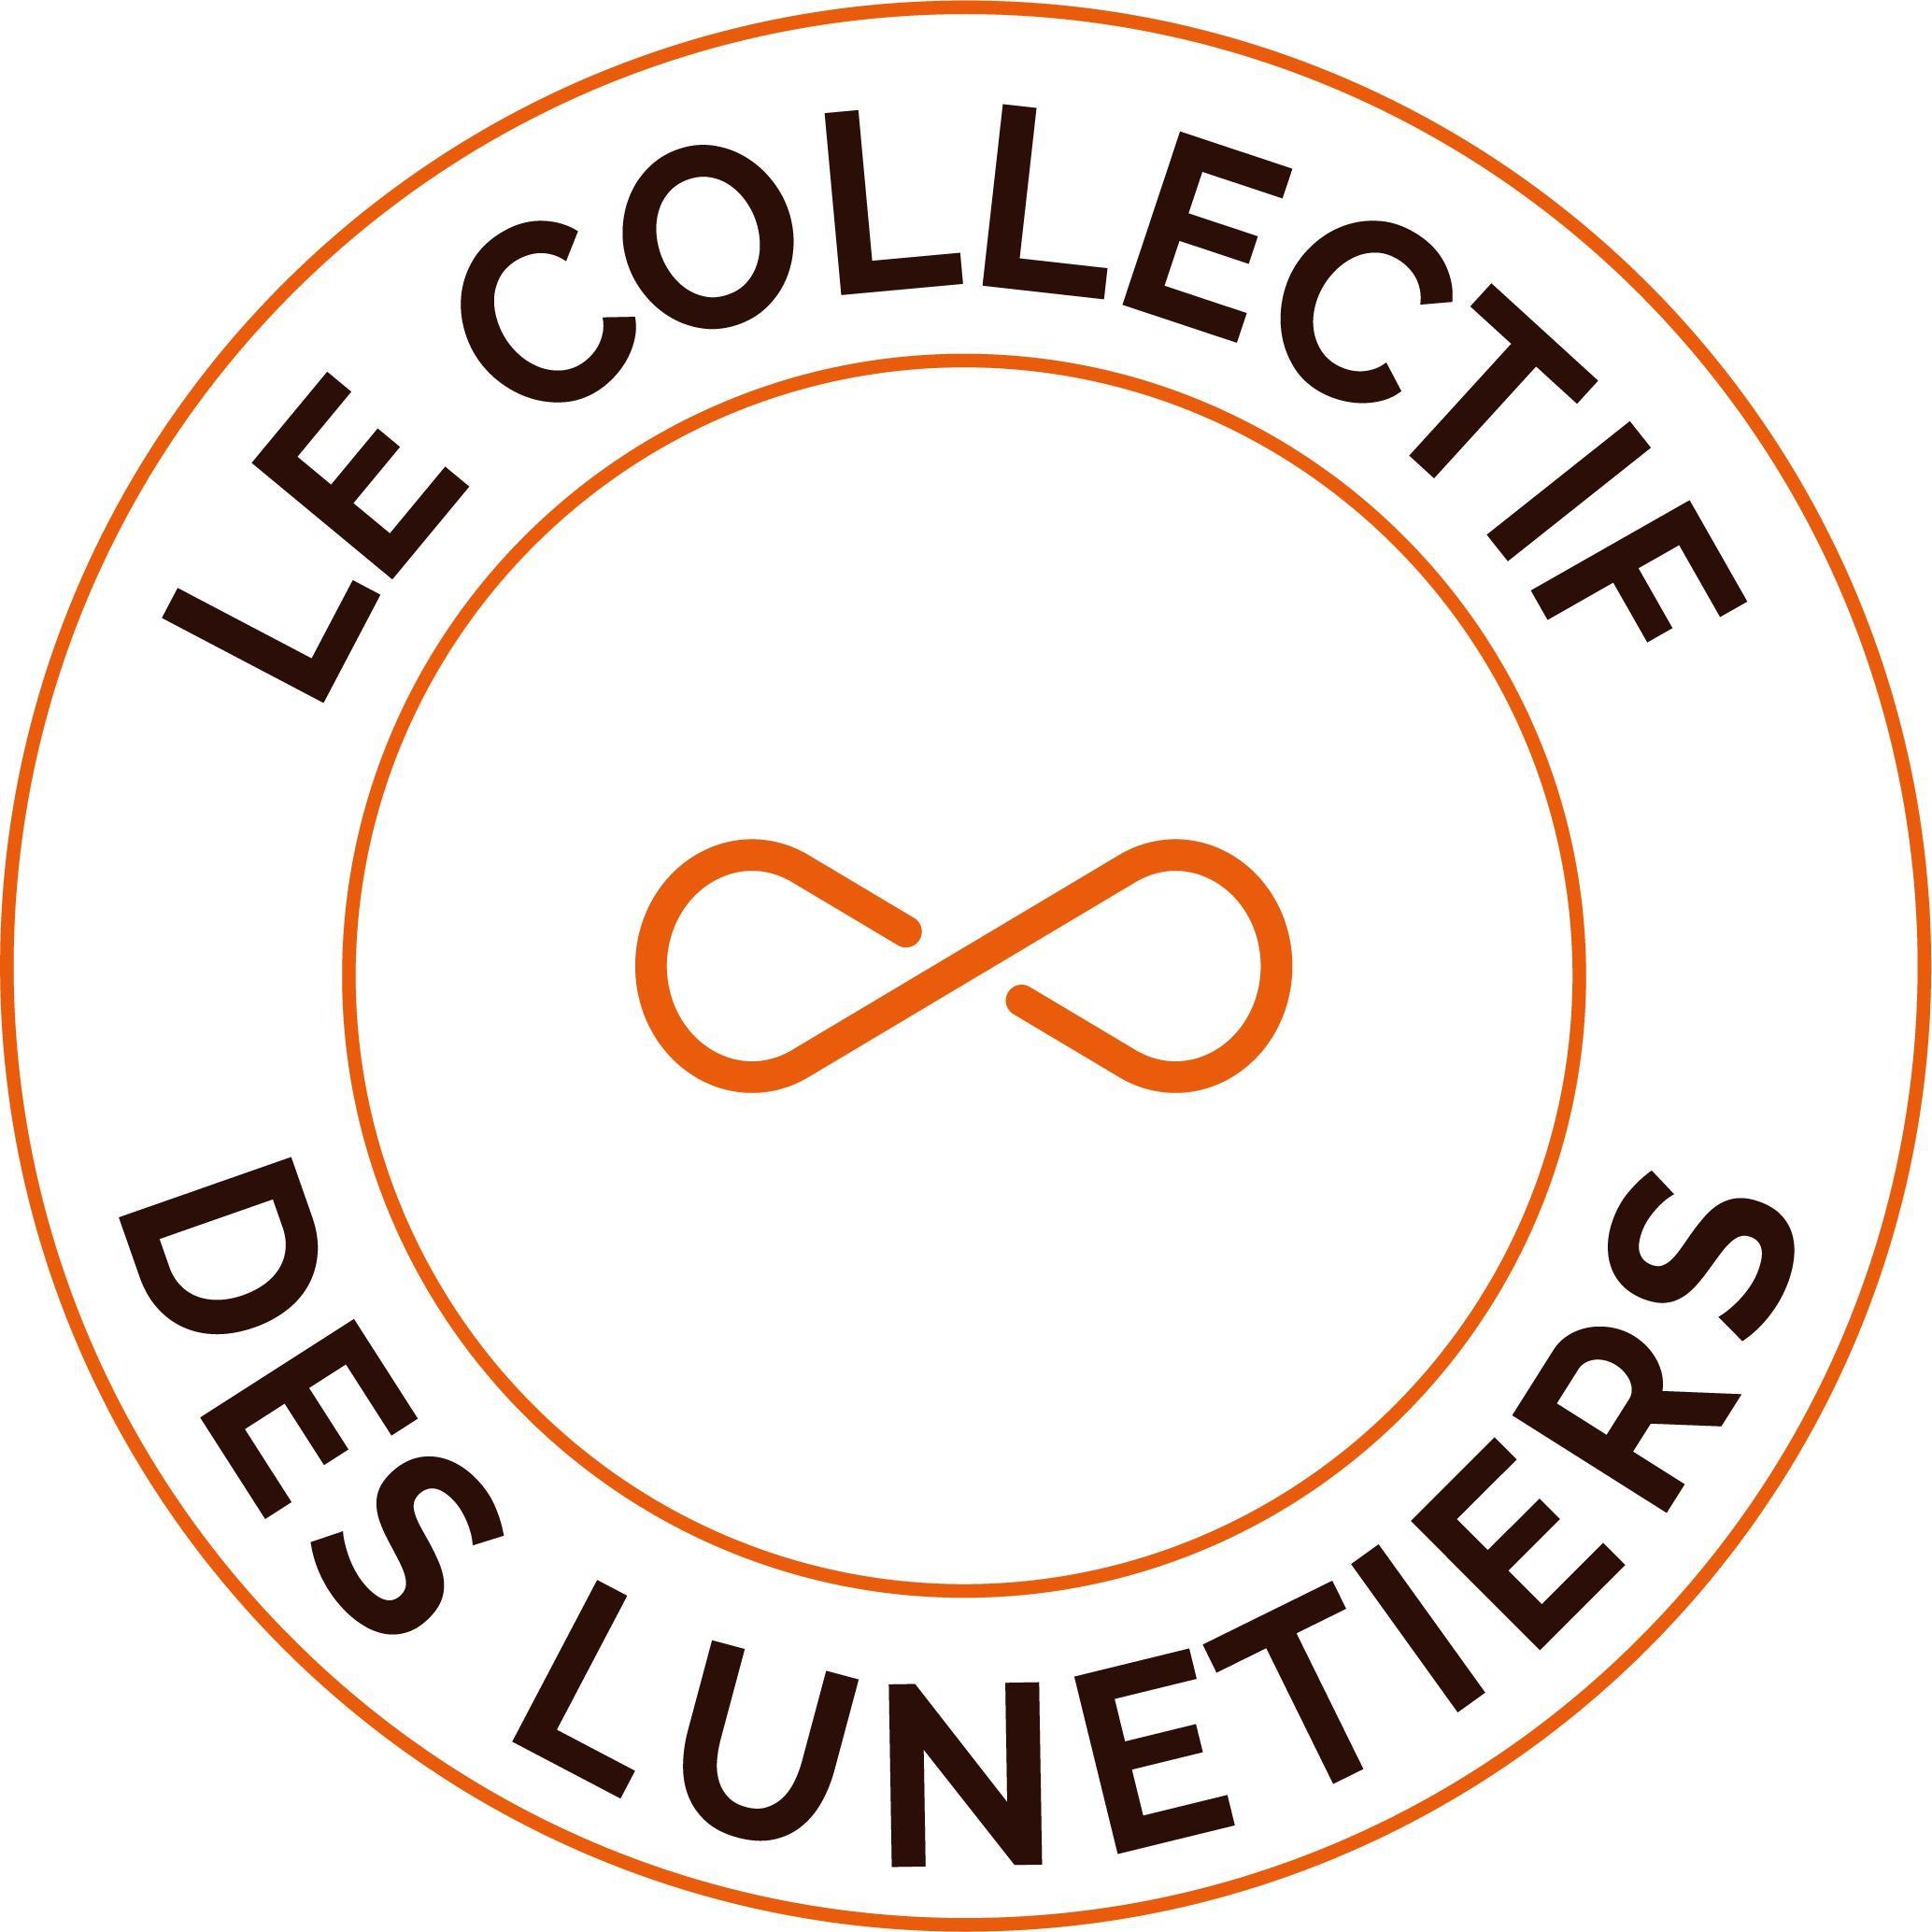 Le Collectif Des Lunetiers Châteaulin